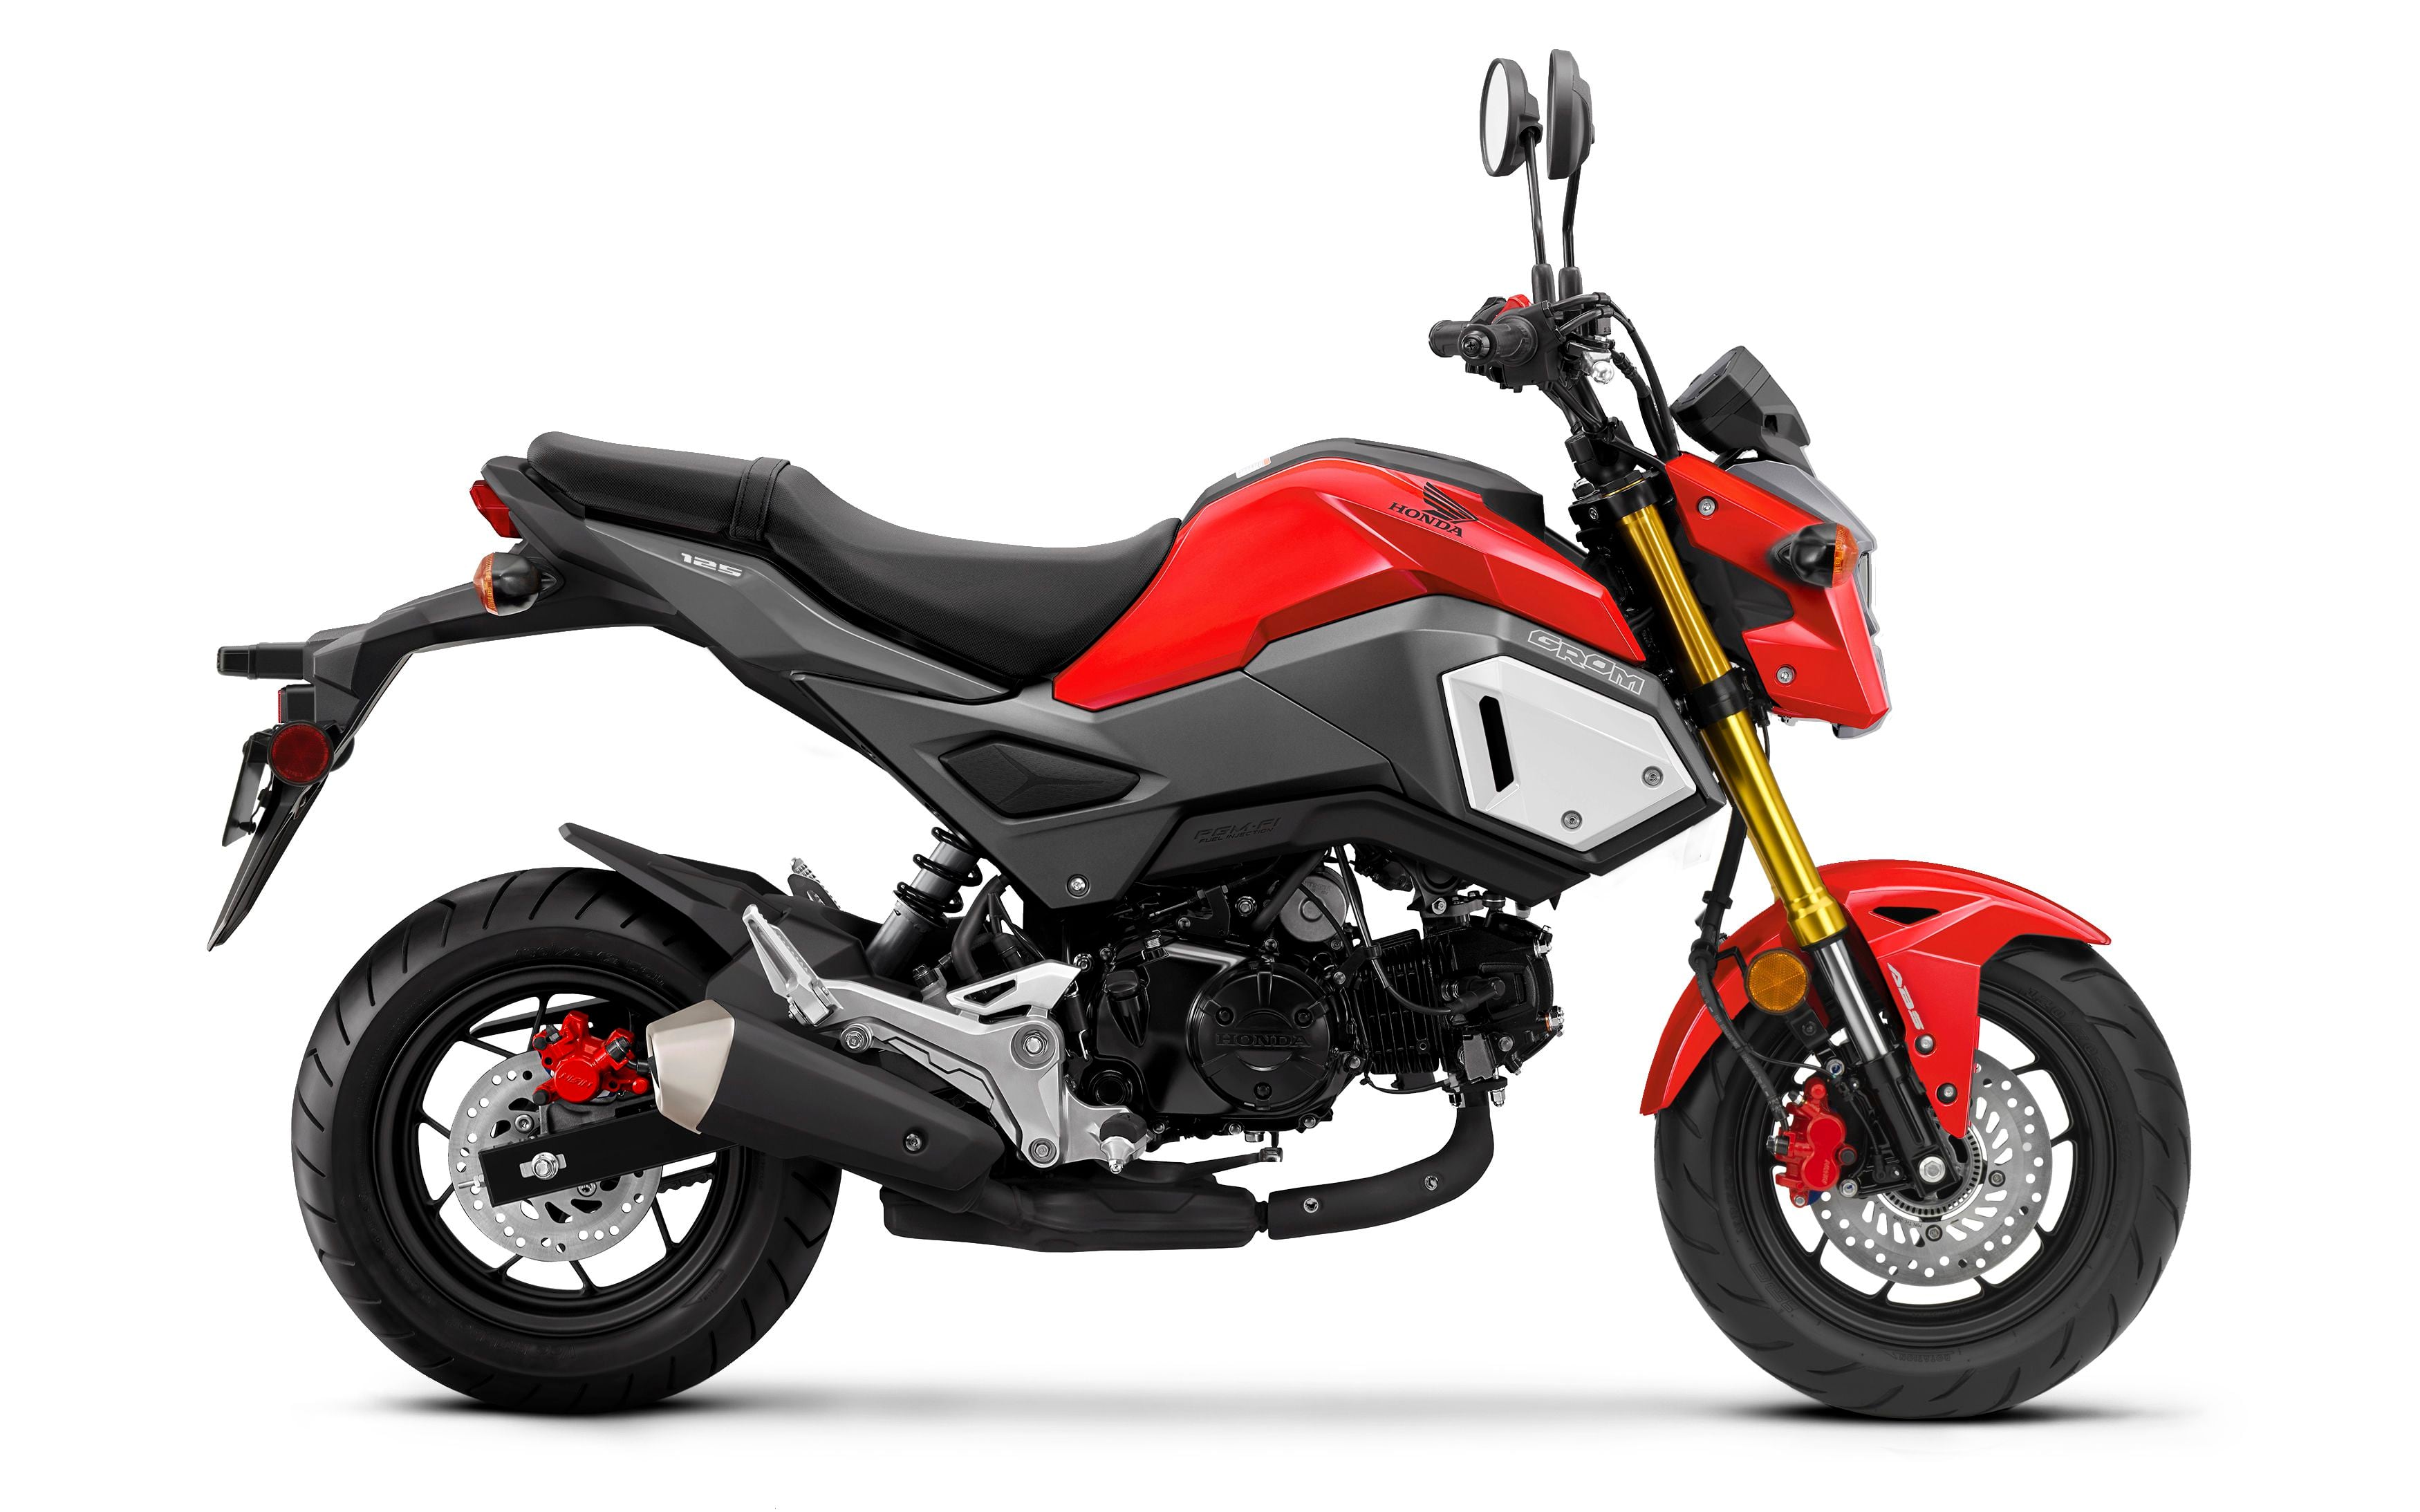 New Honda Motorcycle Models 2020